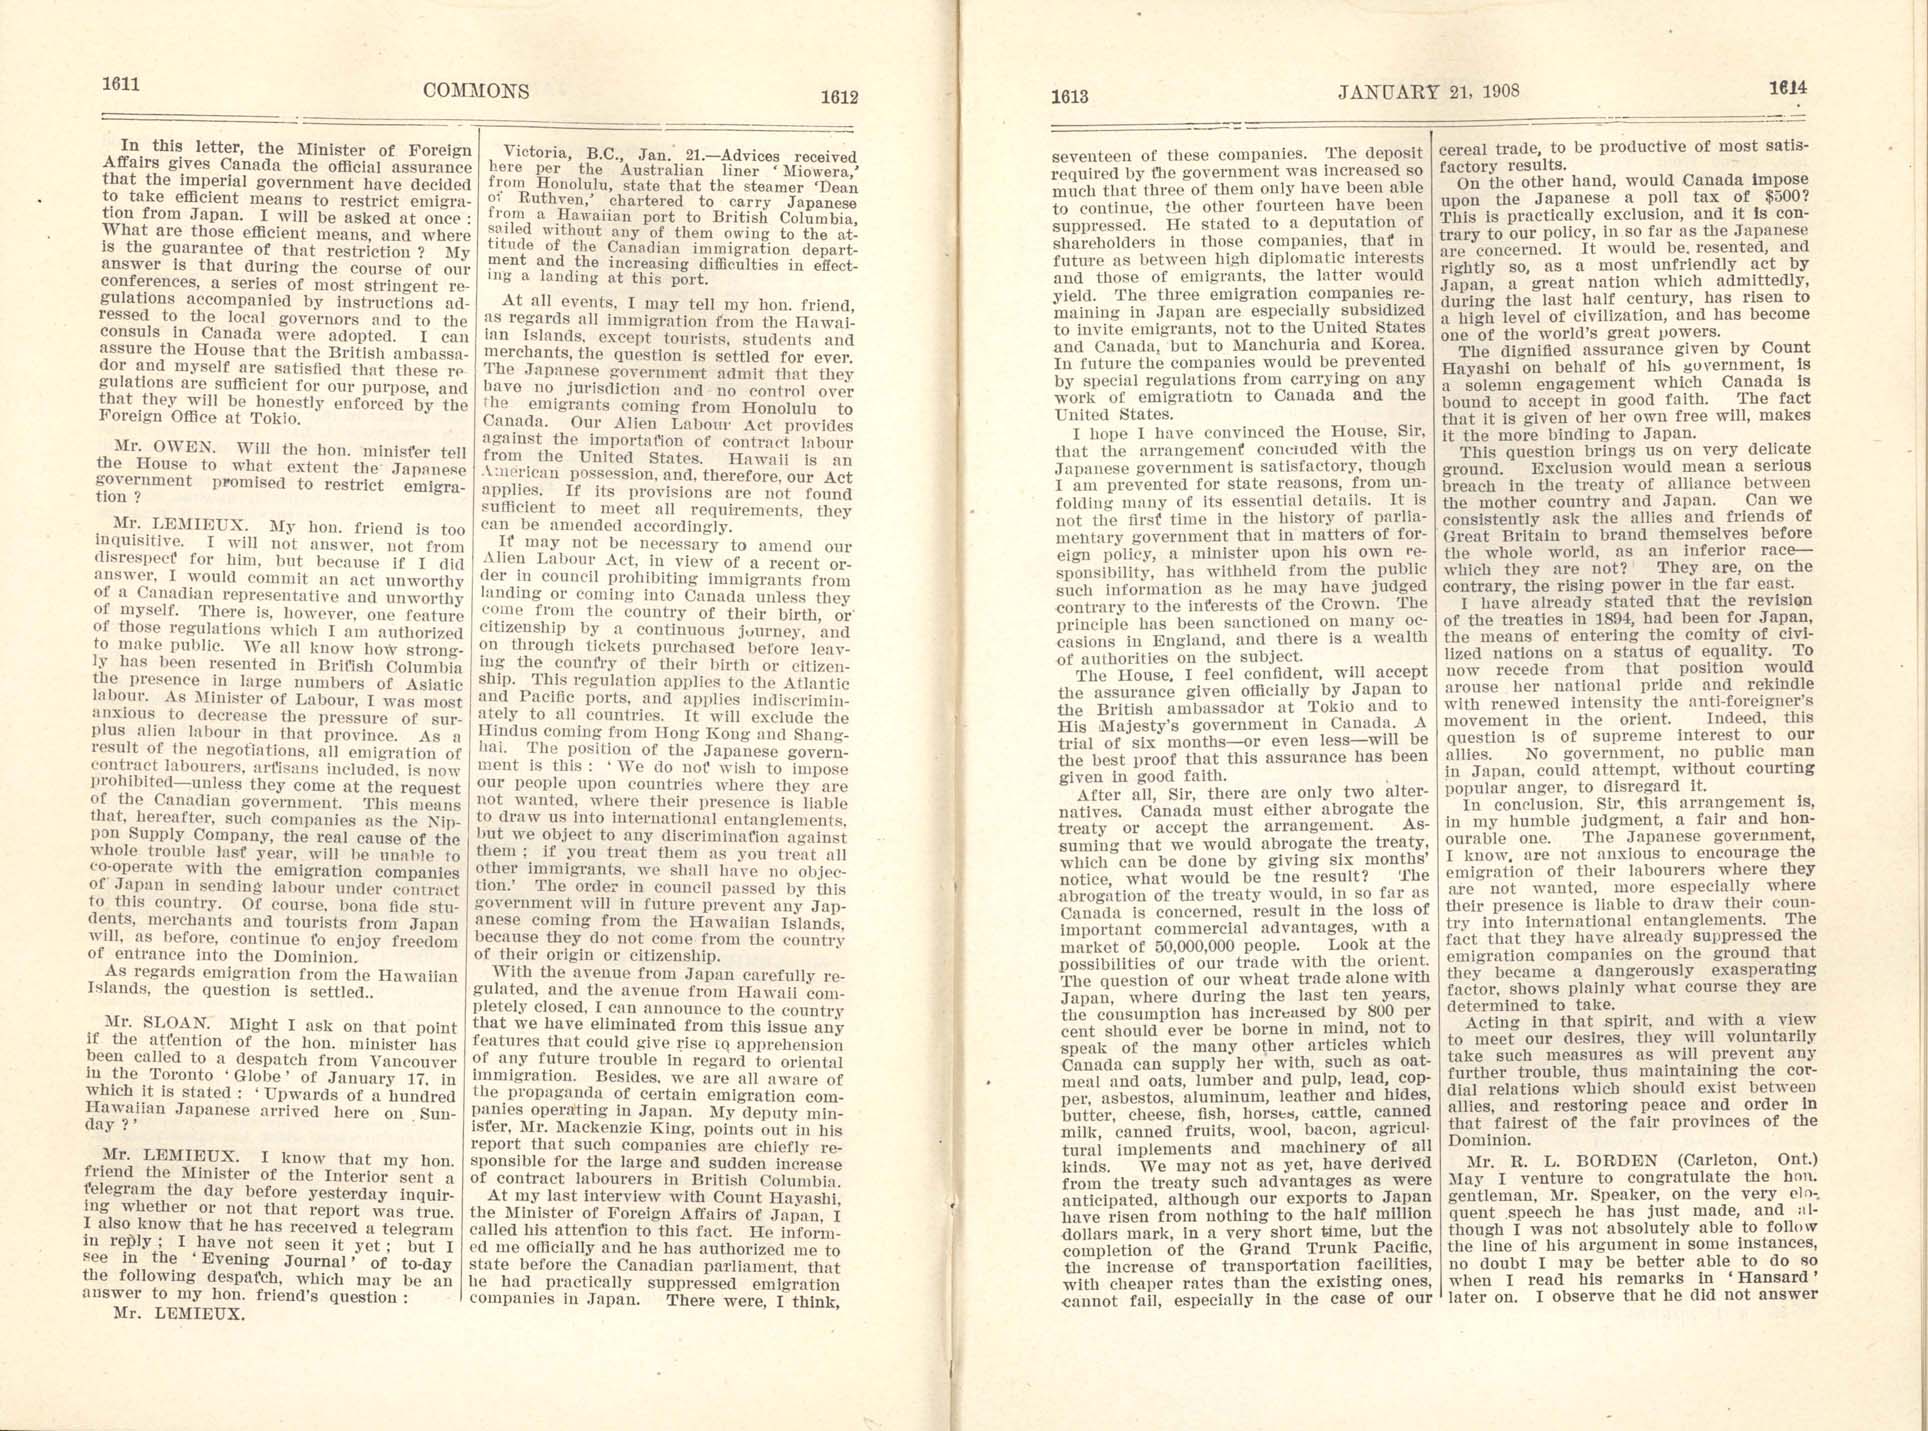 Page 1611, 1612, 1613, 1614 Gentlemen’s Agreement, 1908